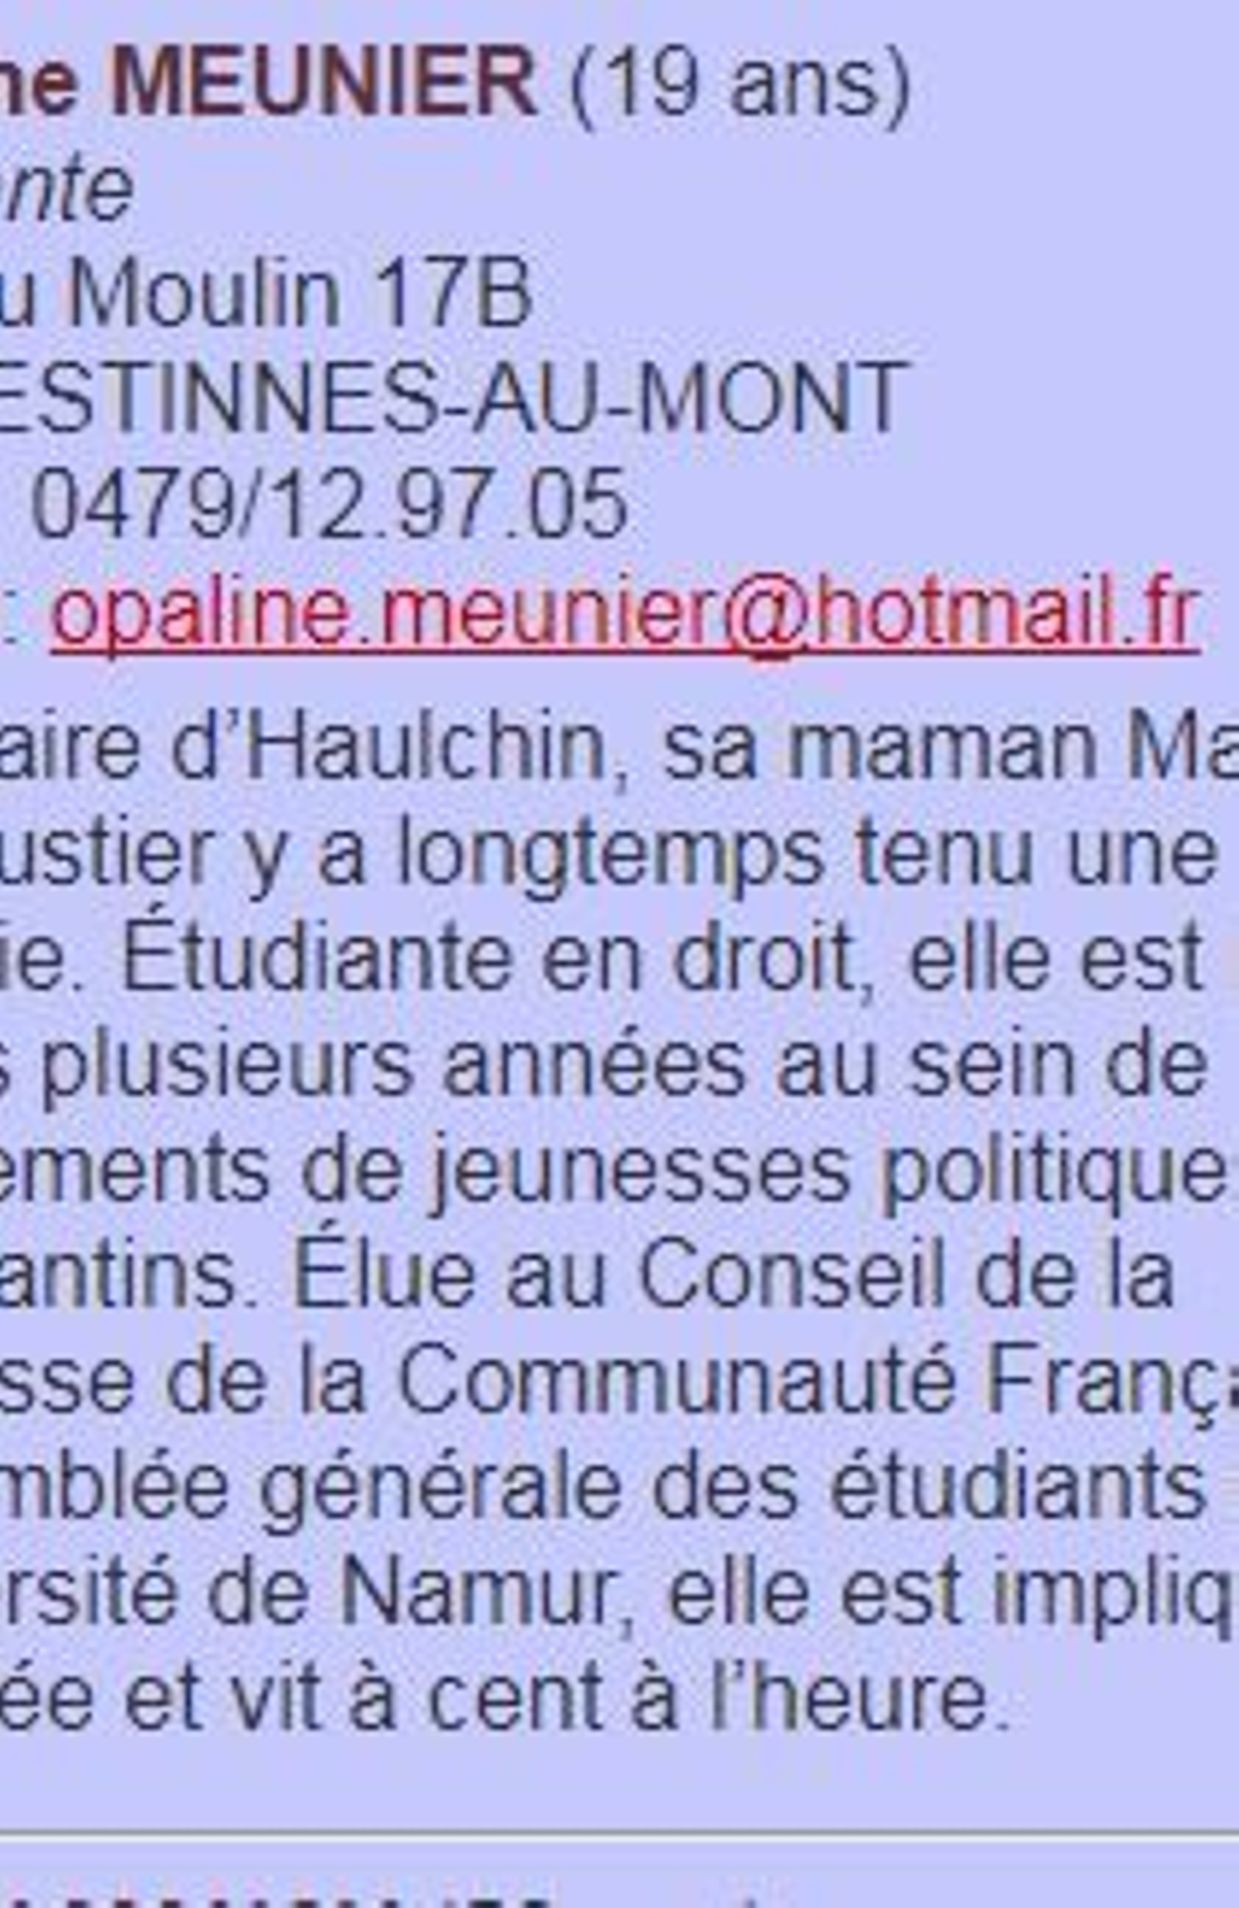 Opaline Meunier: "Tant que l'on aura une majorité absolue à Mons, il ne pourra pas y avoir de pluralisme"